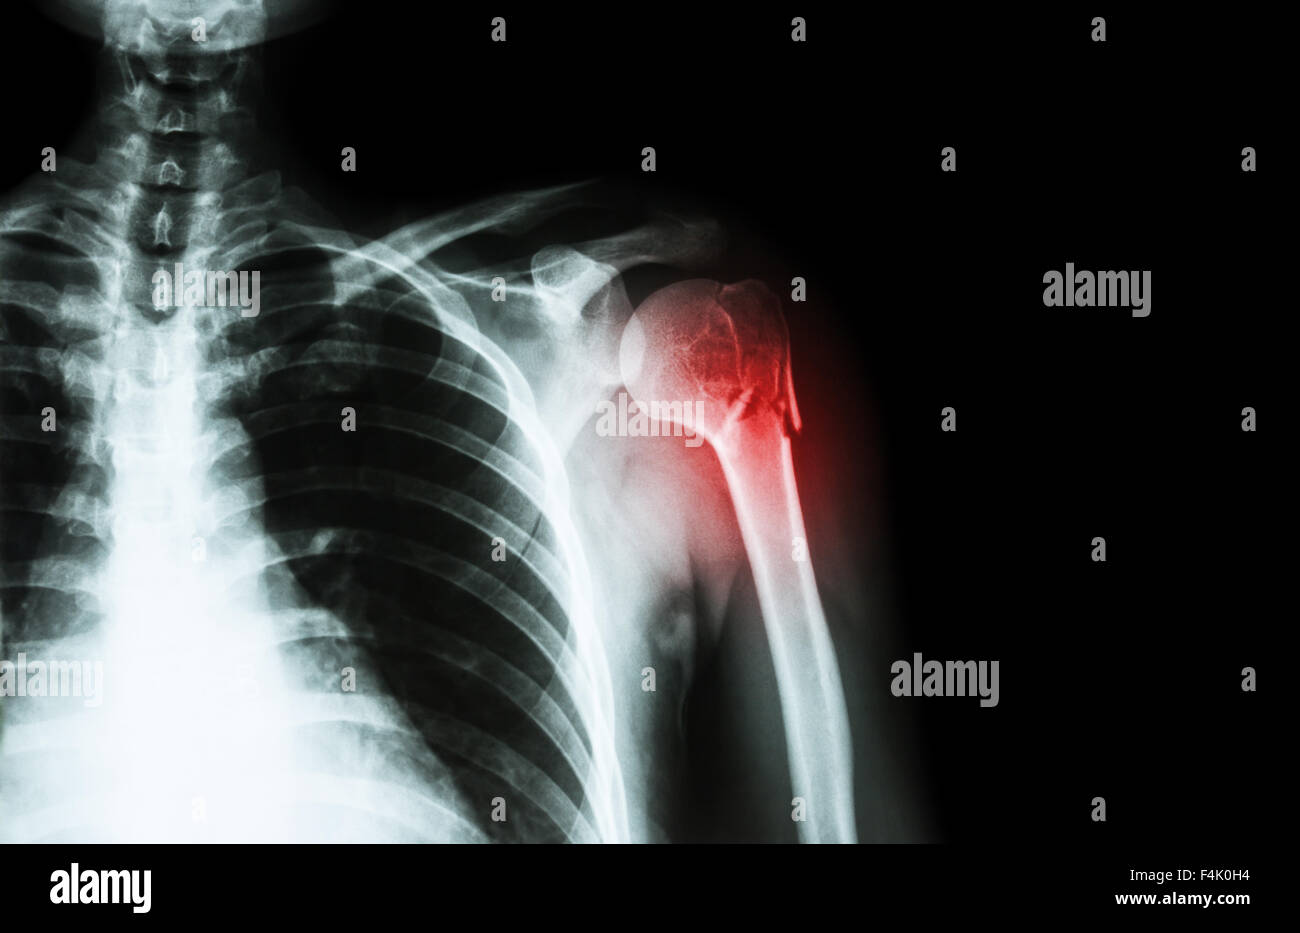 Fraktur am Hals des Humerus (Armknochen) (film Röntgen linken Schulter und leeren Bereich auf der rechten Seite) Stockfoto